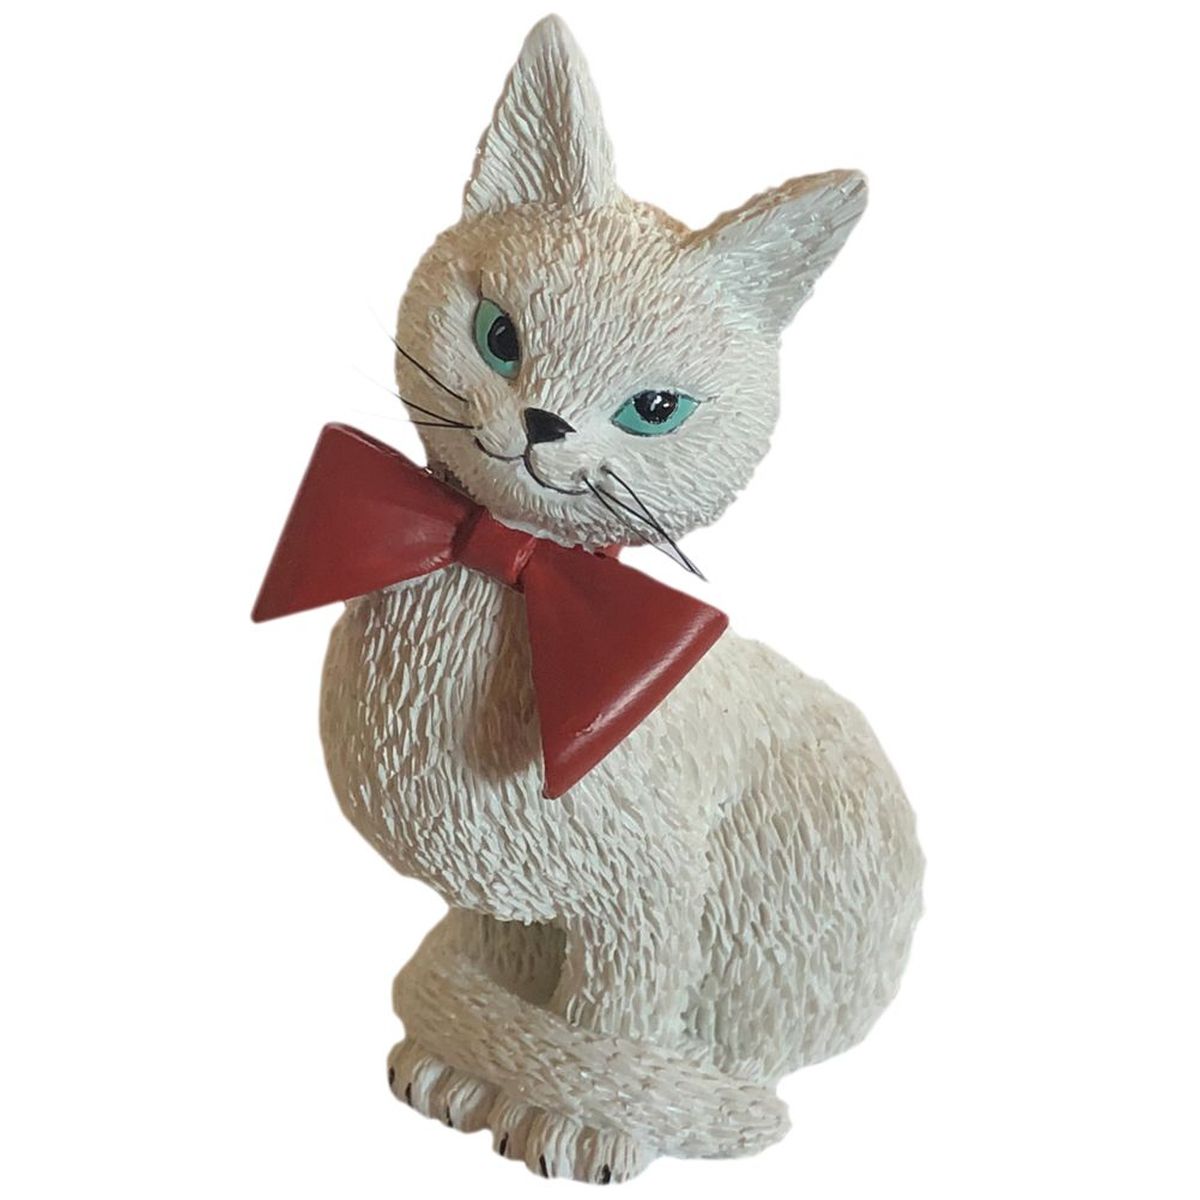 Figurine Les chats de Dubout - Coquette blanche avec nud